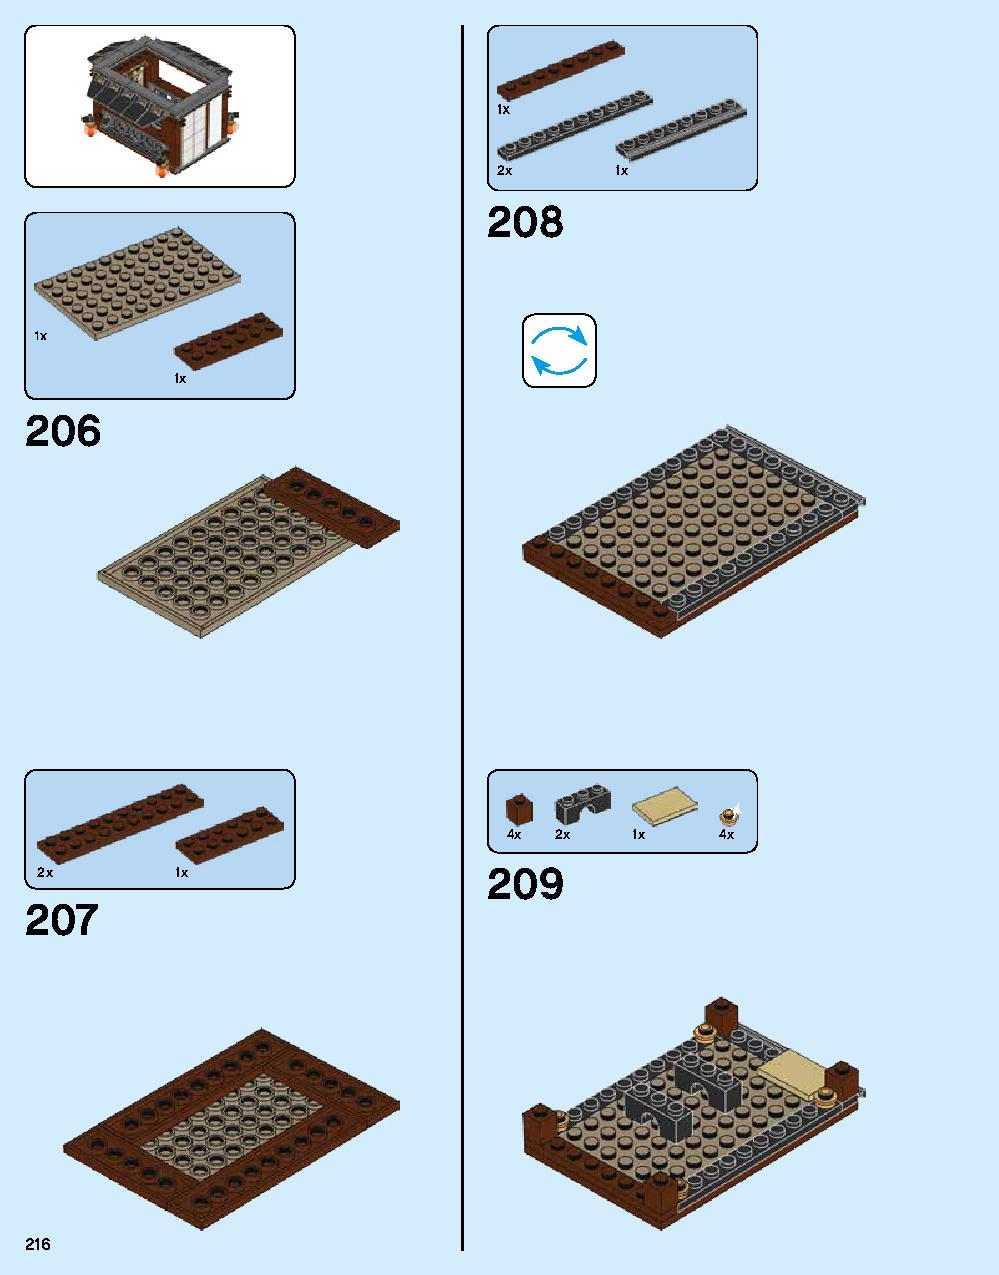 ニンジャゴー シティ 70620 レゴの商品情報 レゴの説明書・組立方法 216 page